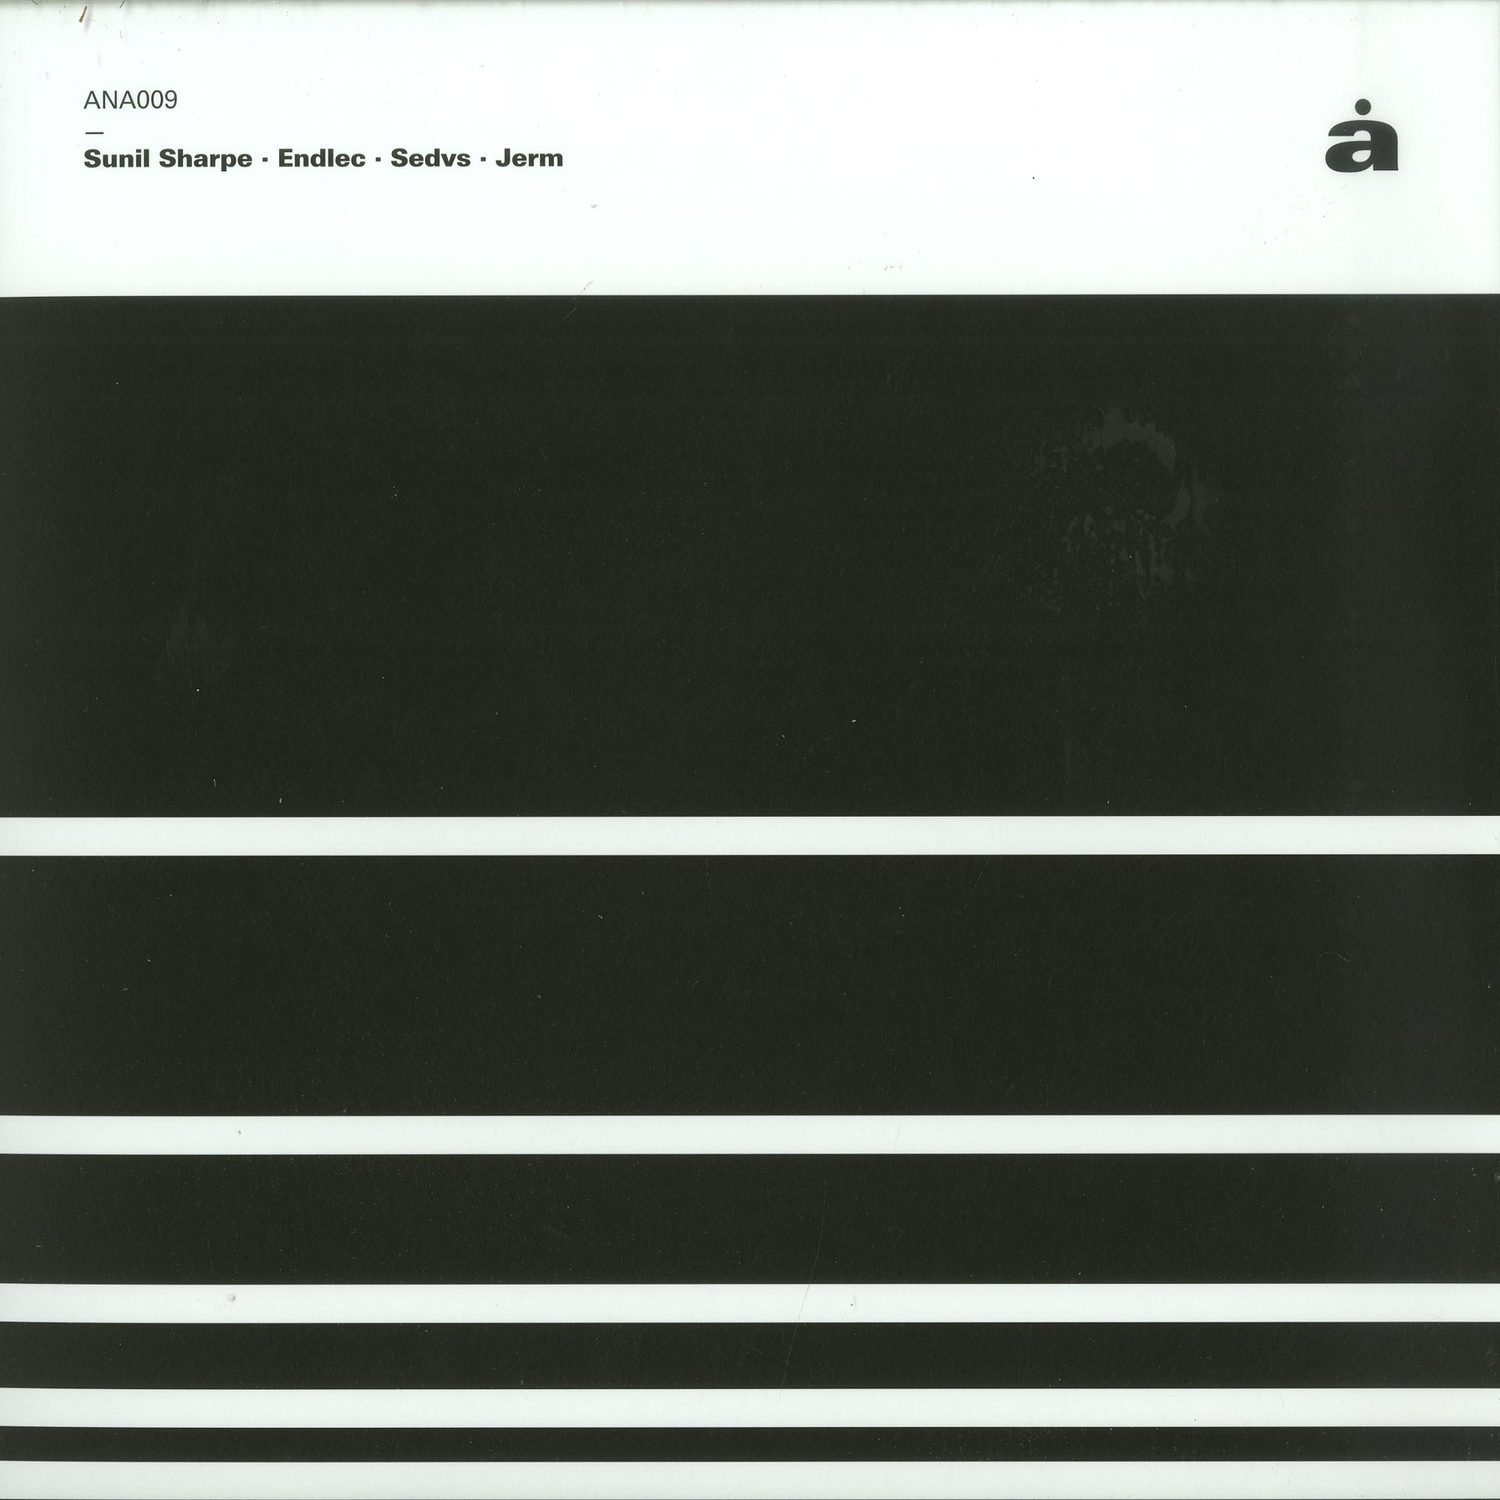 Sunil Sharpe / Endlec / Sedvs / Jerm - V/A